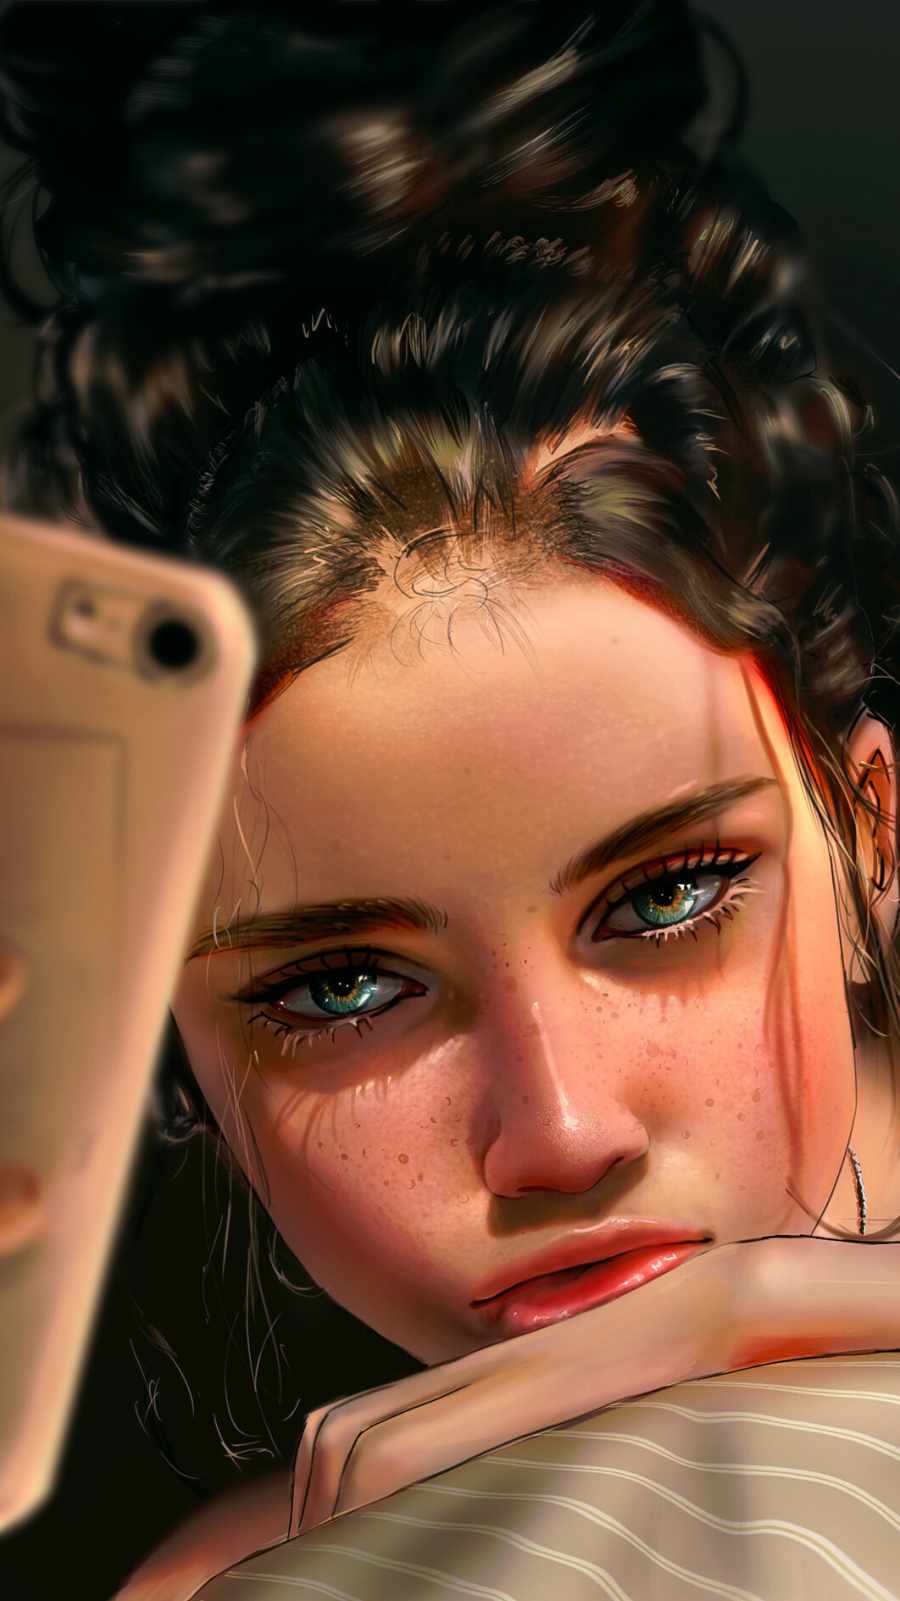 Selfie Girl IPhone Wallpaper - IPhone Wallpapers : iPhone Wallpapers